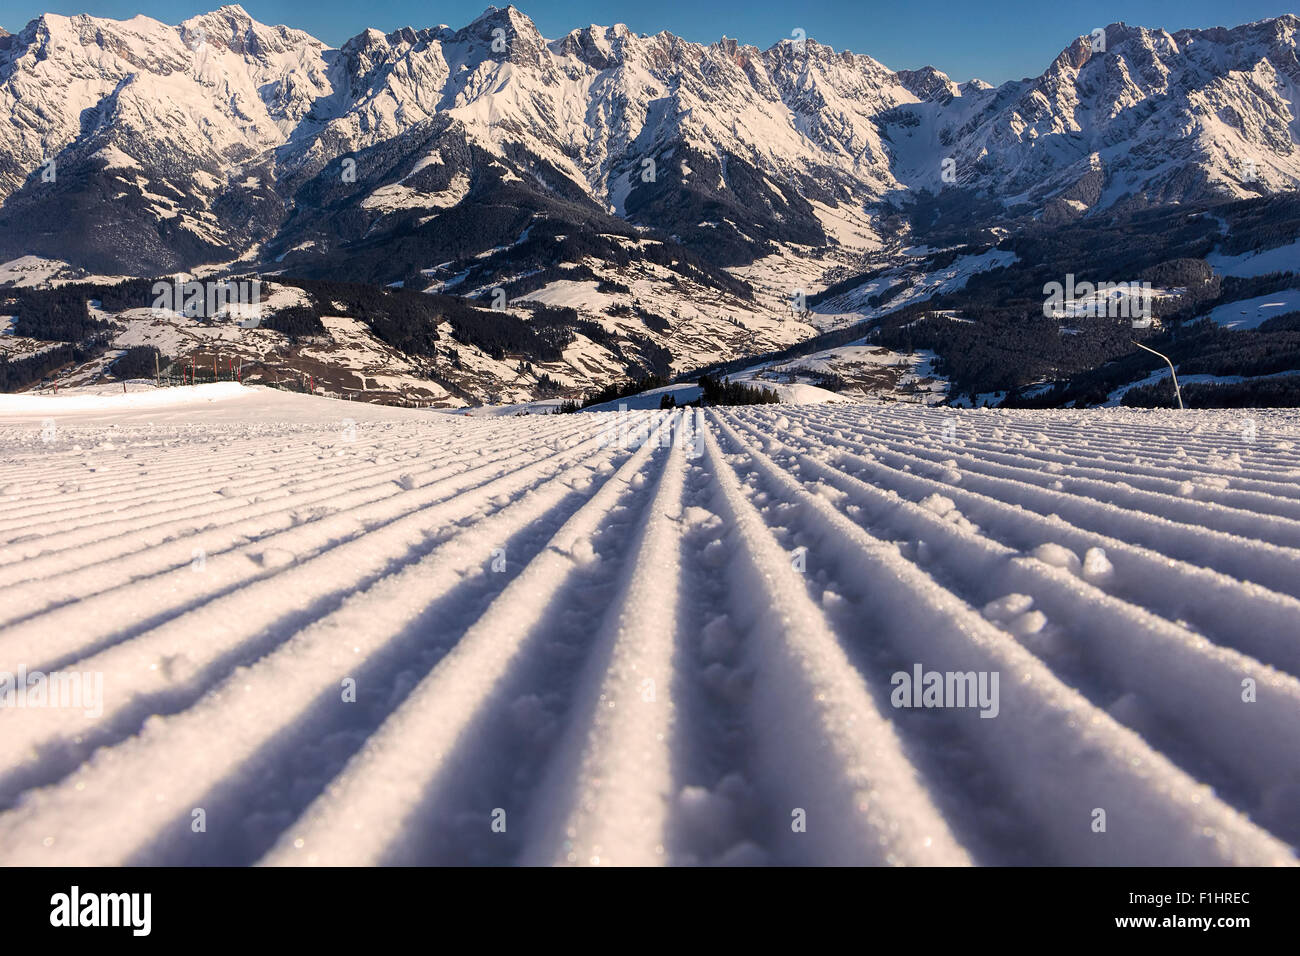 Perfecto preparado Ski Slope en bellos Alpes Austríacos para vacaciones de invierno. Foto de stock